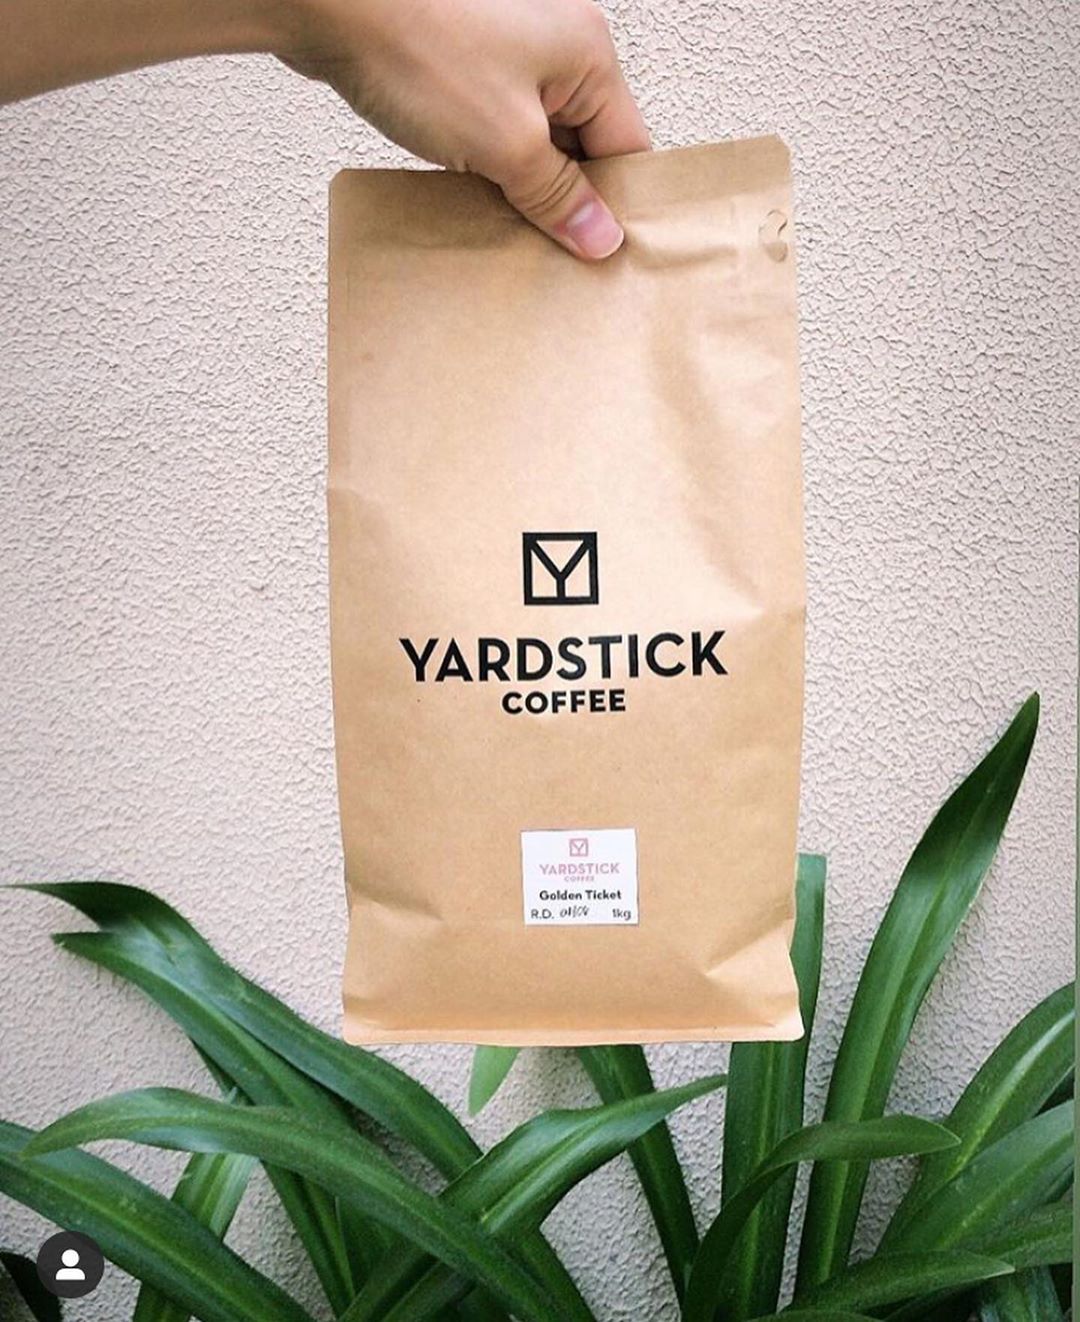 Yardstick coffee Golden Ticket